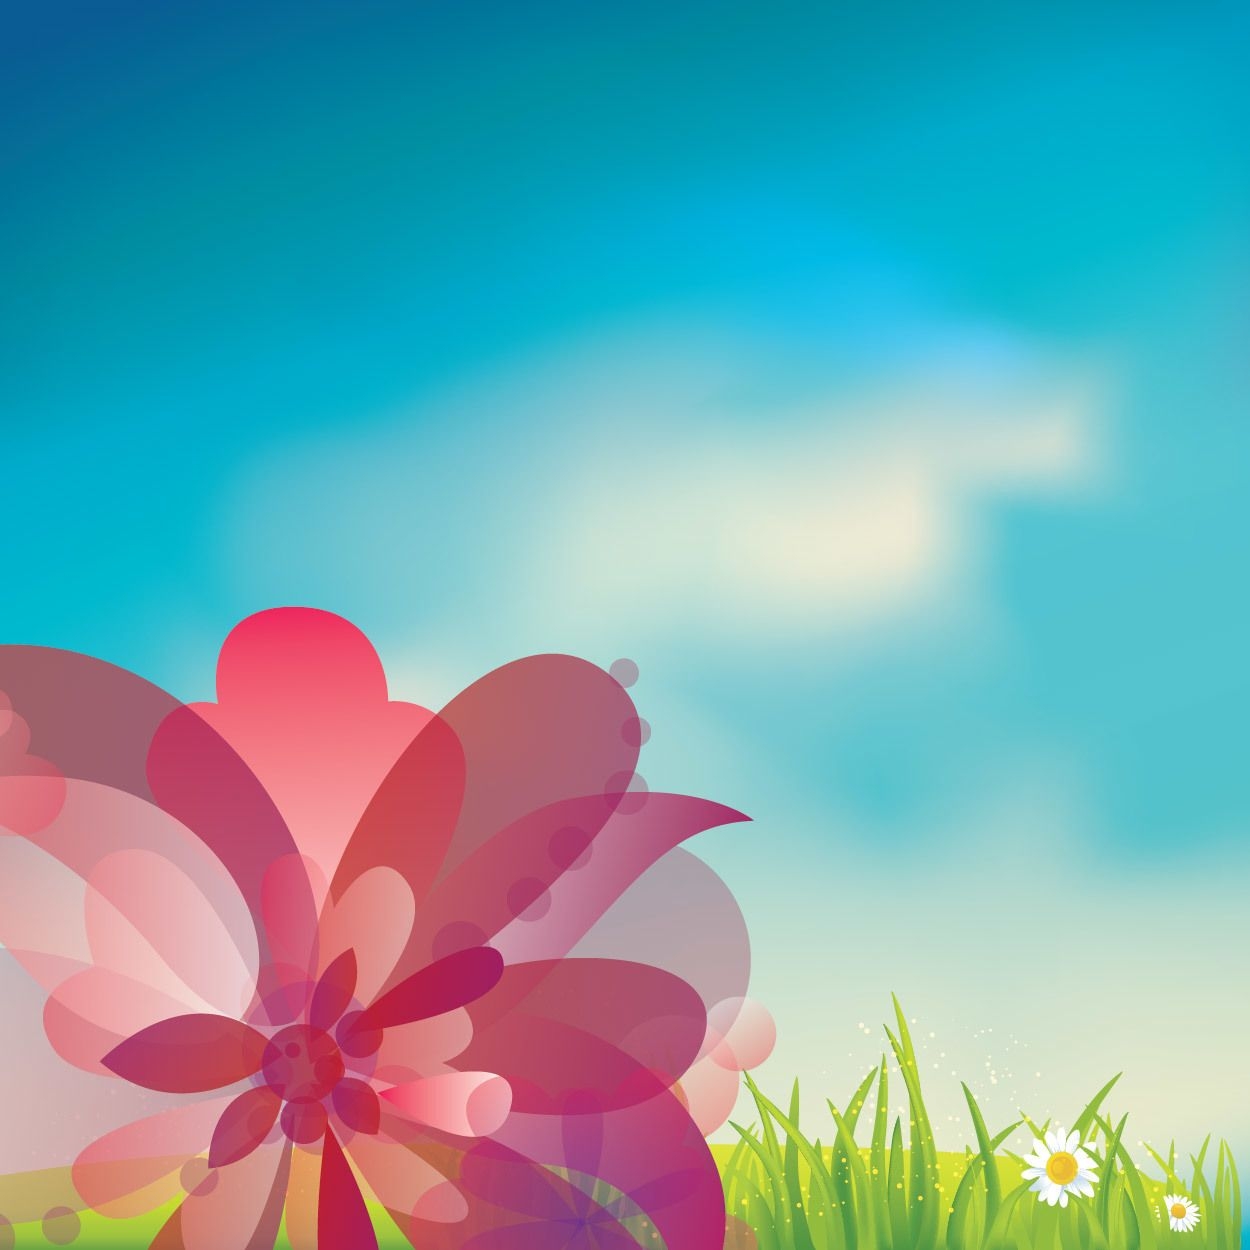 Rosa Blume auf Gras mit blauem Himmel